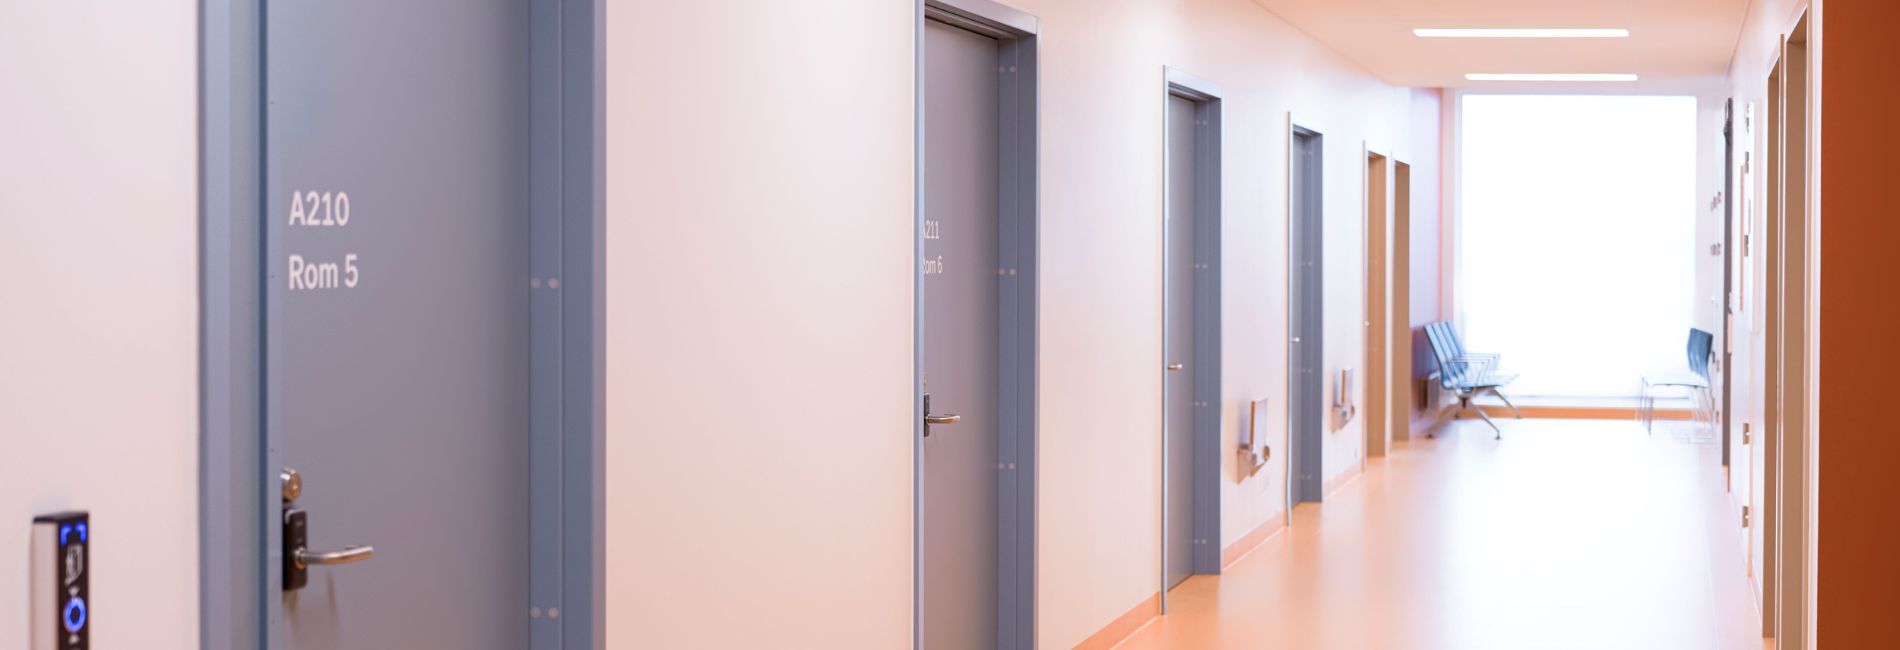 Nordic Door Healthcare 1900x650